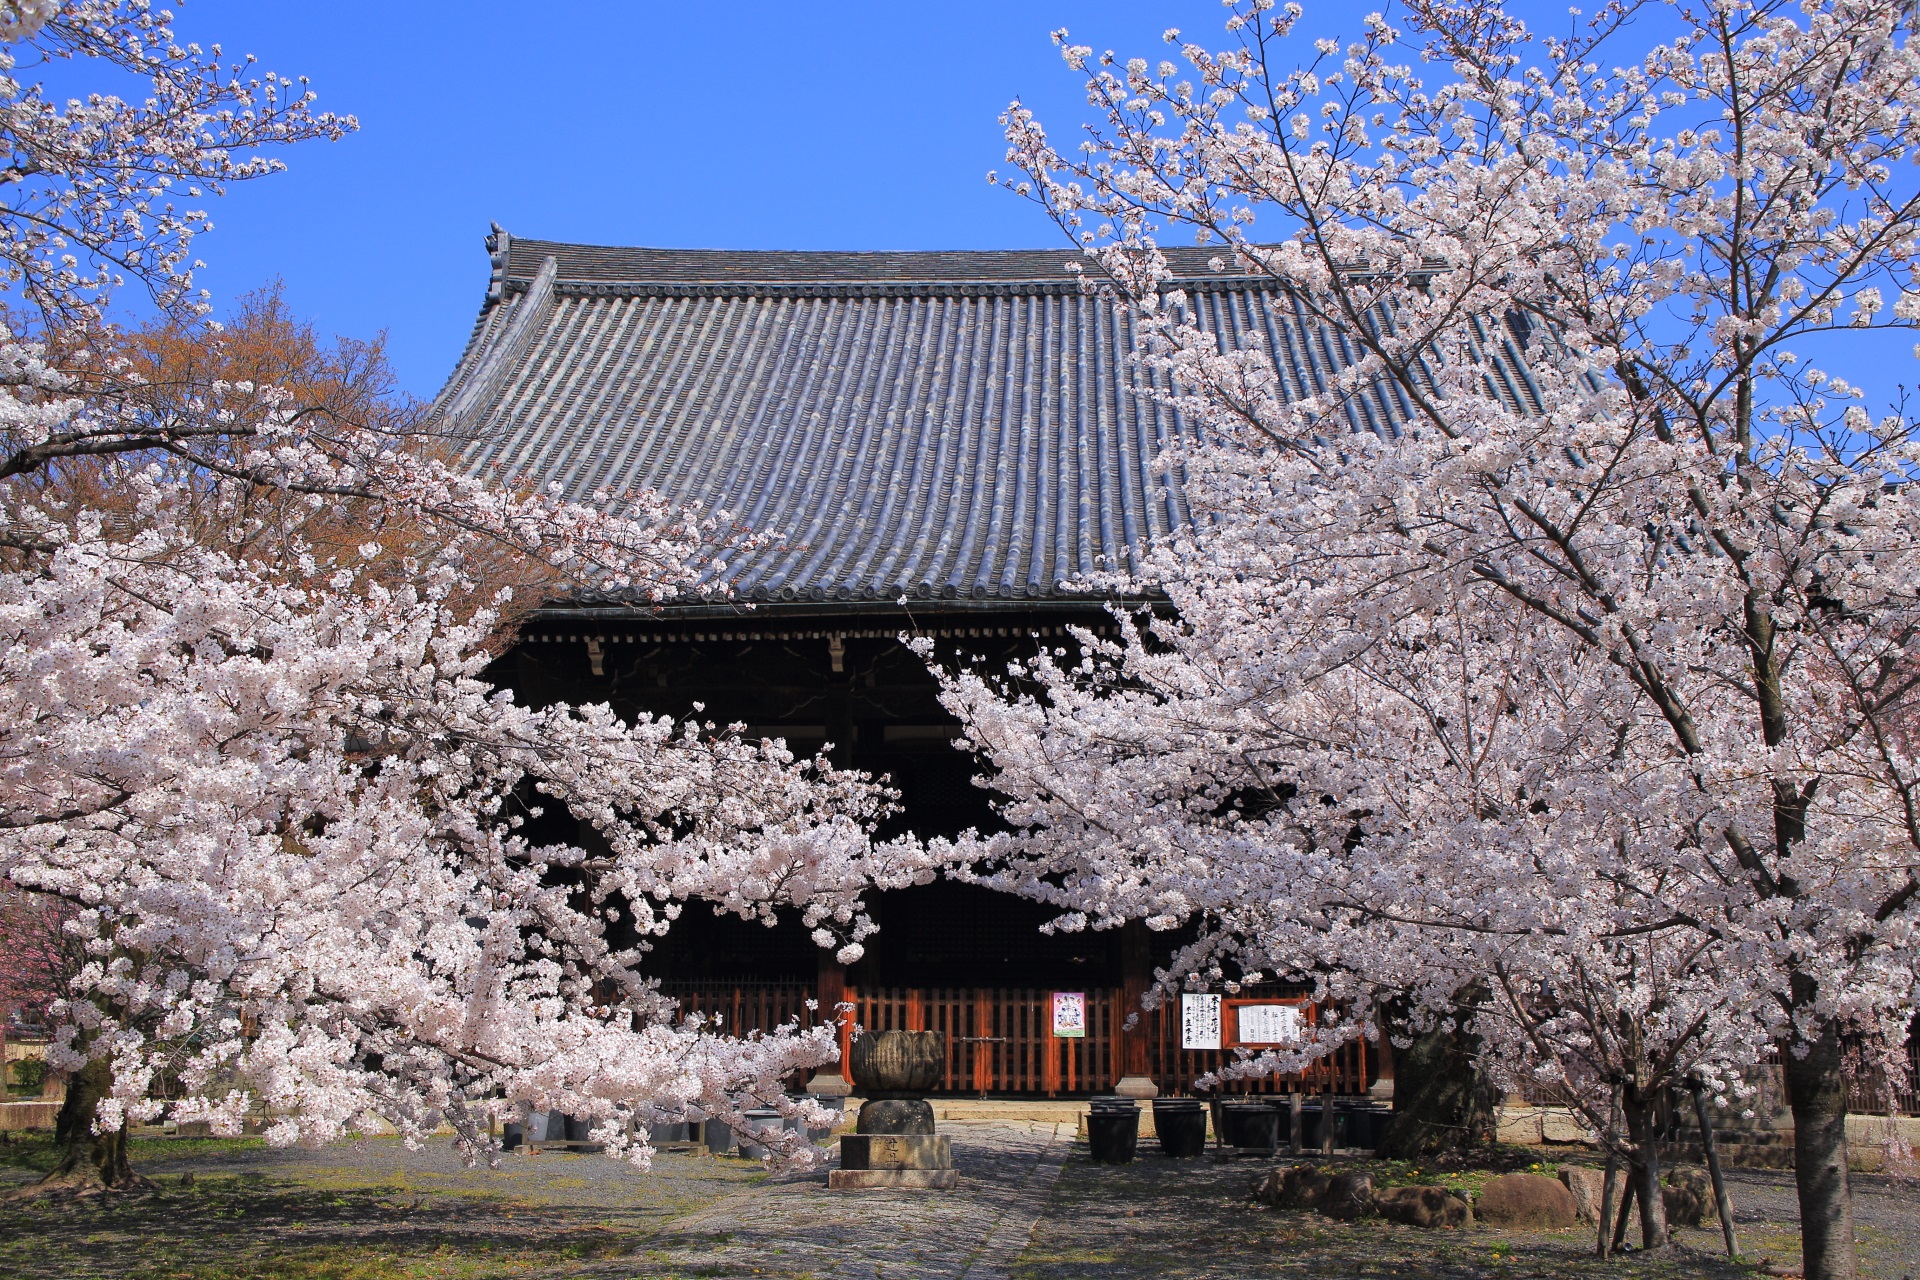 立本寺の立派な本堂を上品かつ豪快に染める桜